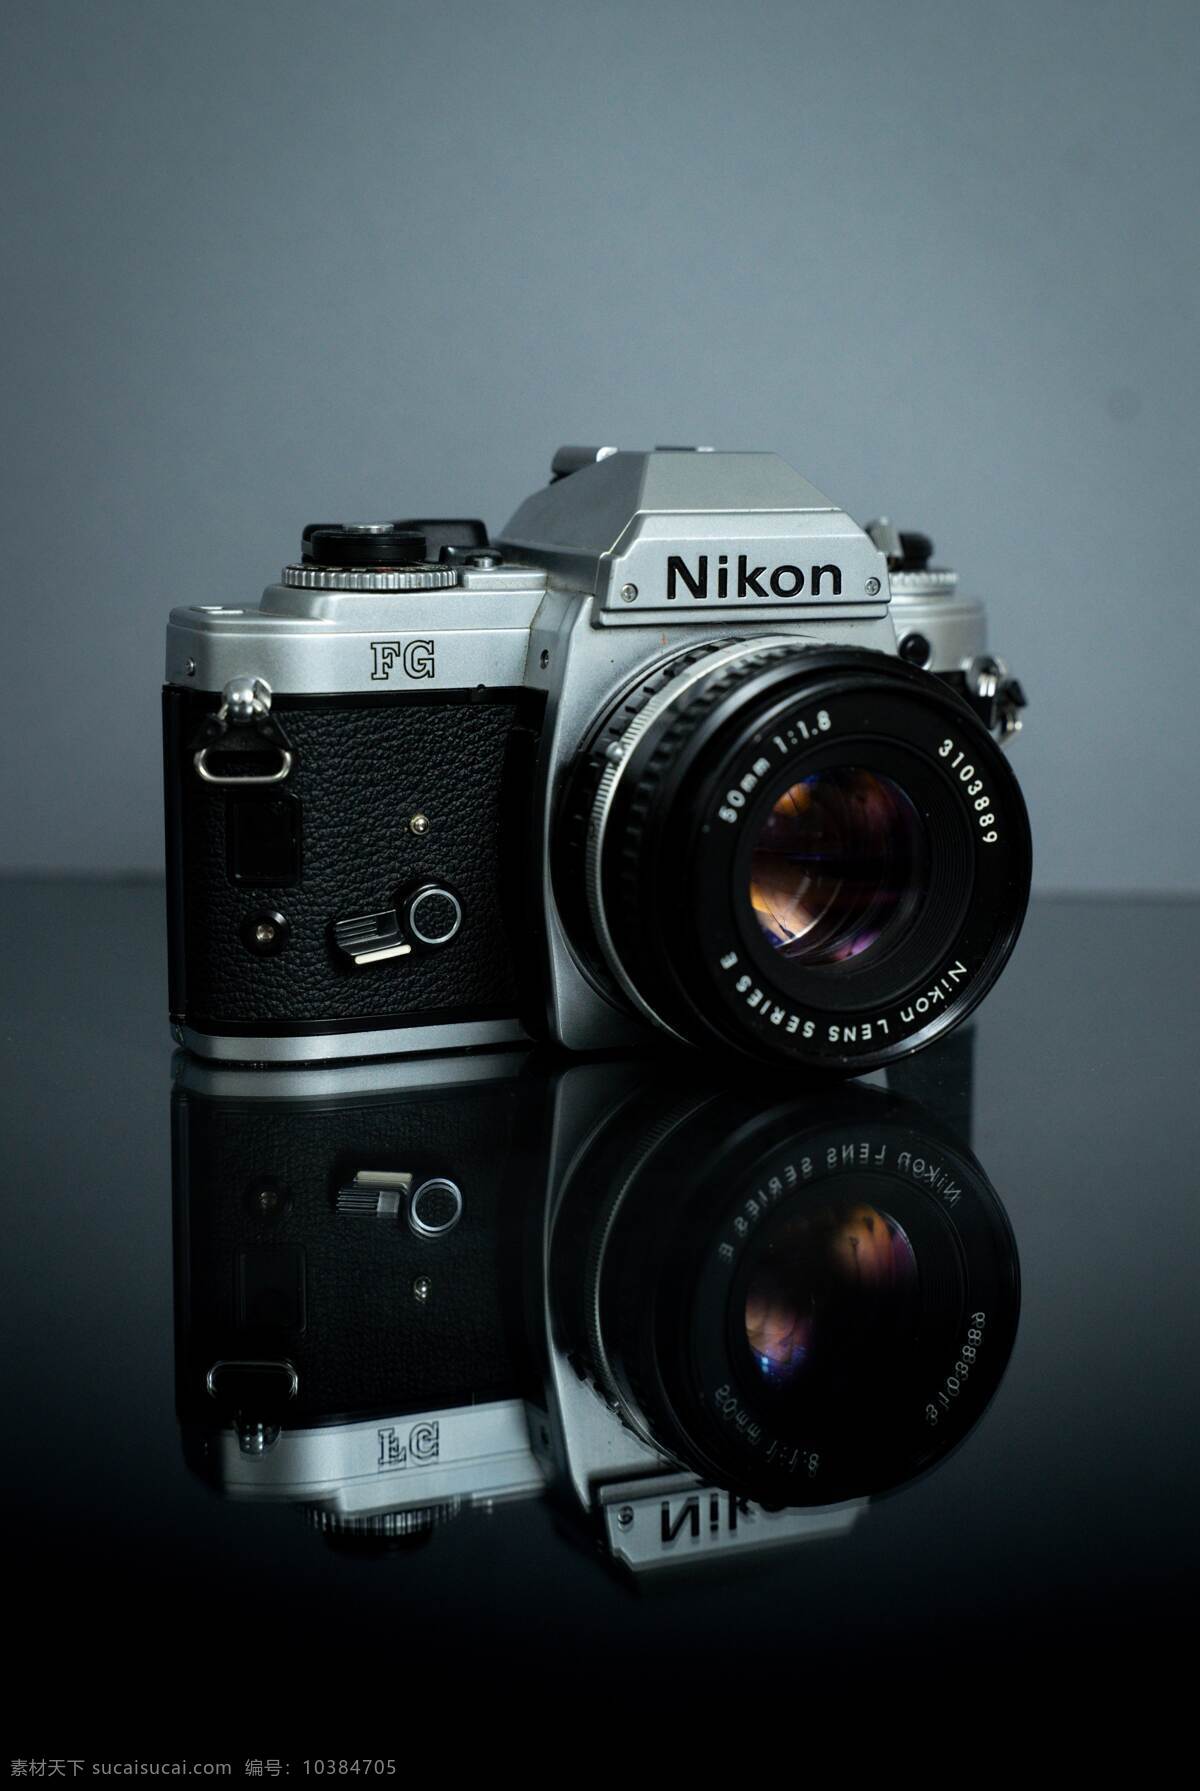 高清 尼康 数码相机 相机 日本相机 尼康公司 拍照 生活百科 数码家电